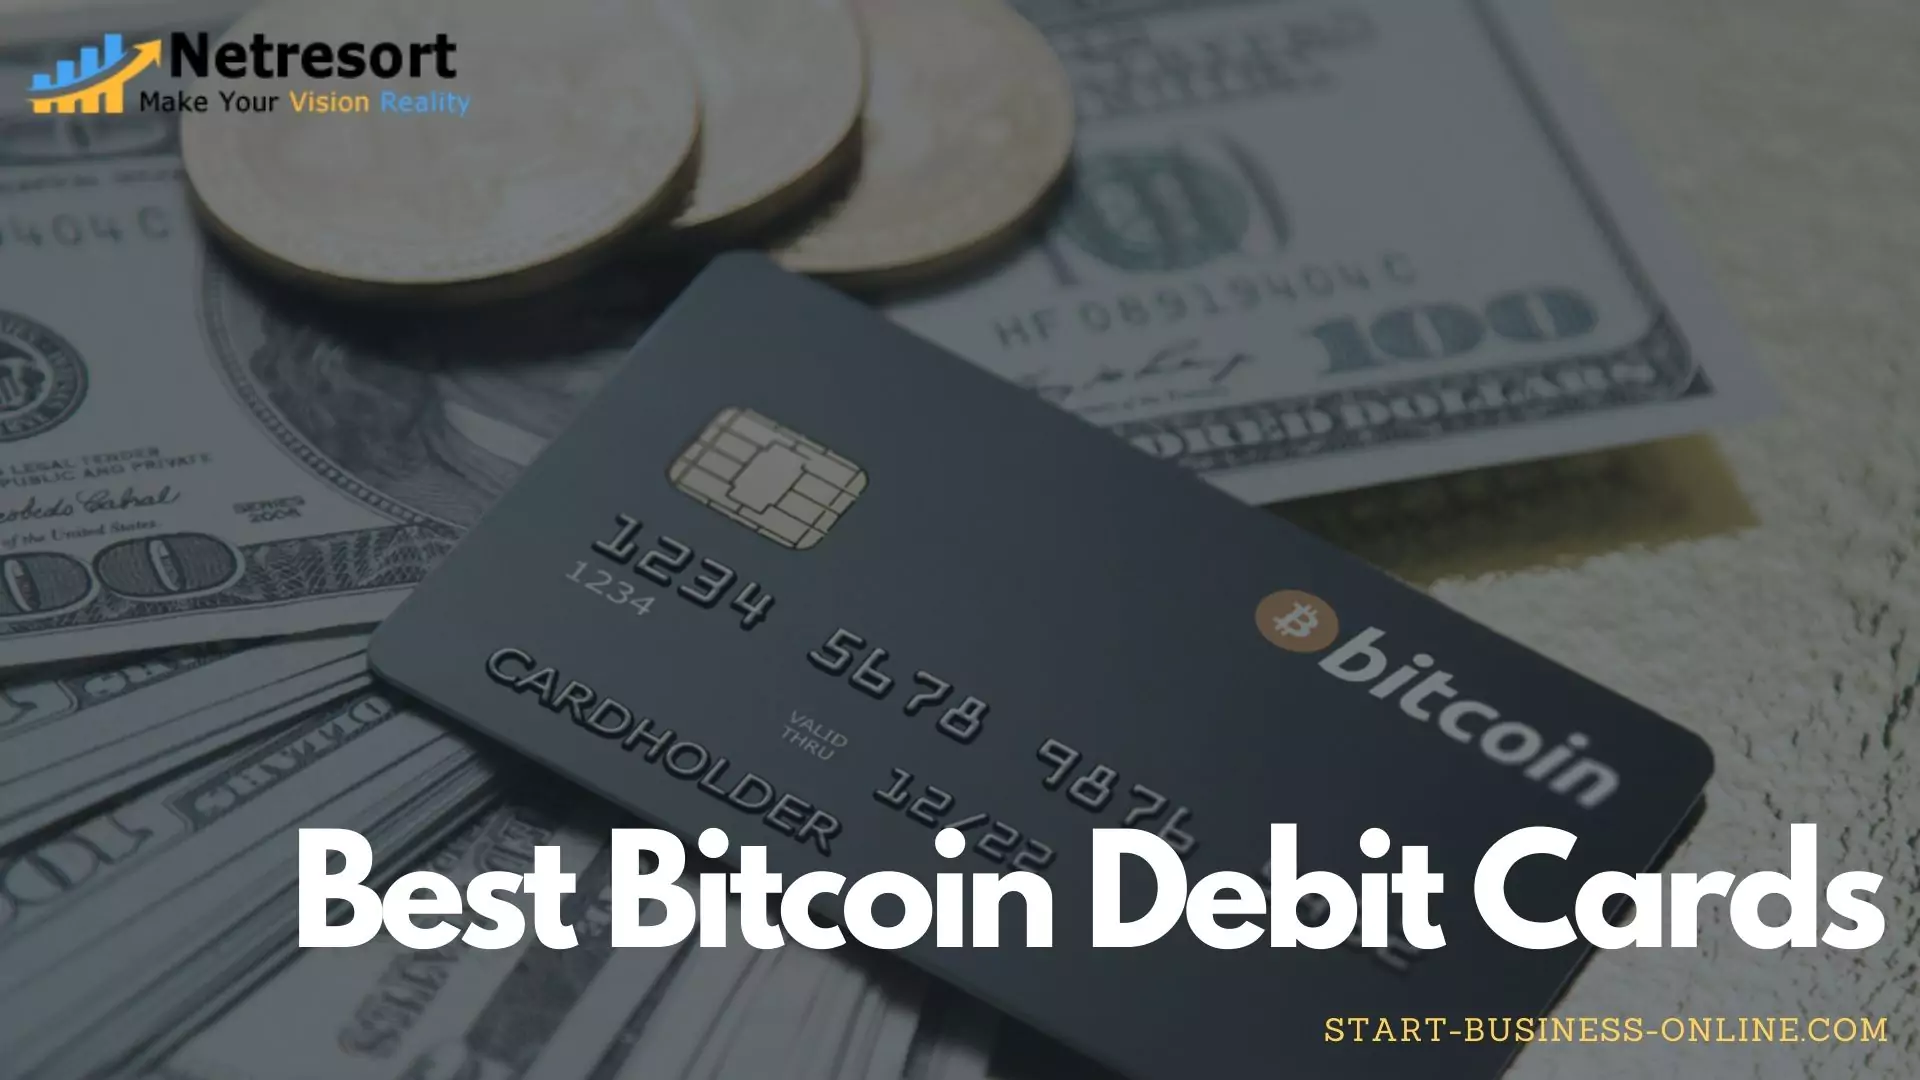 Best Bitcoin Debit Cards Reviews